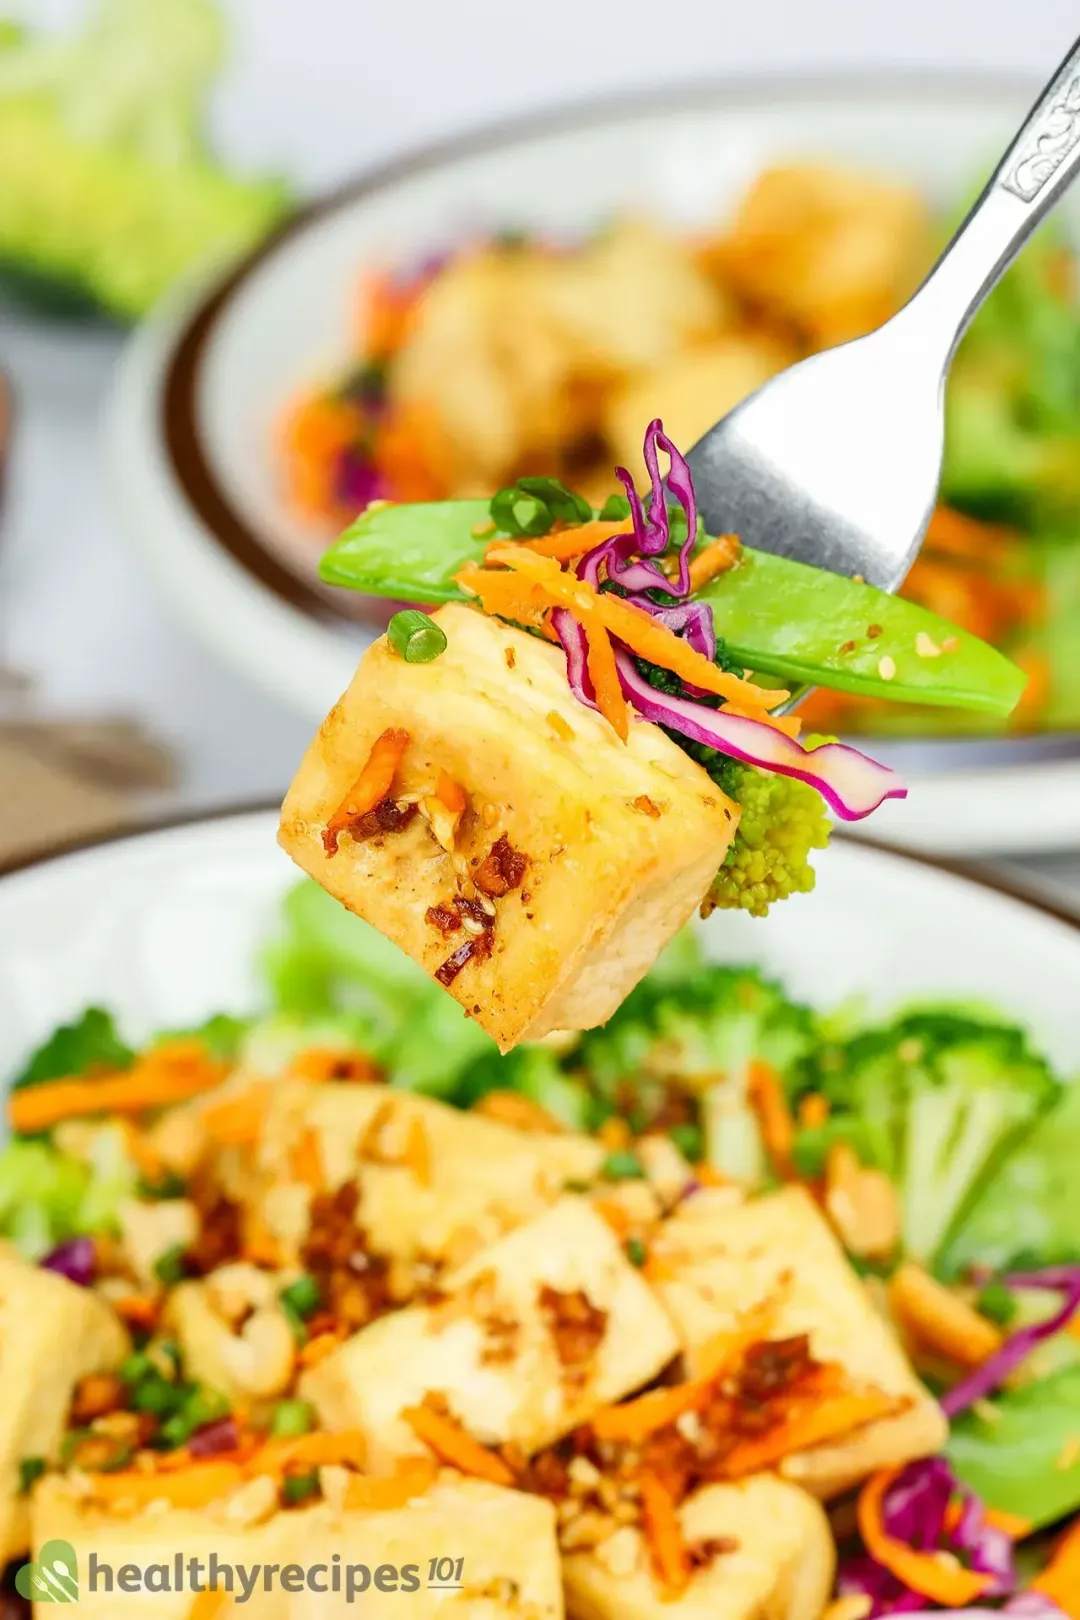 Is Tofu Salad Healthy